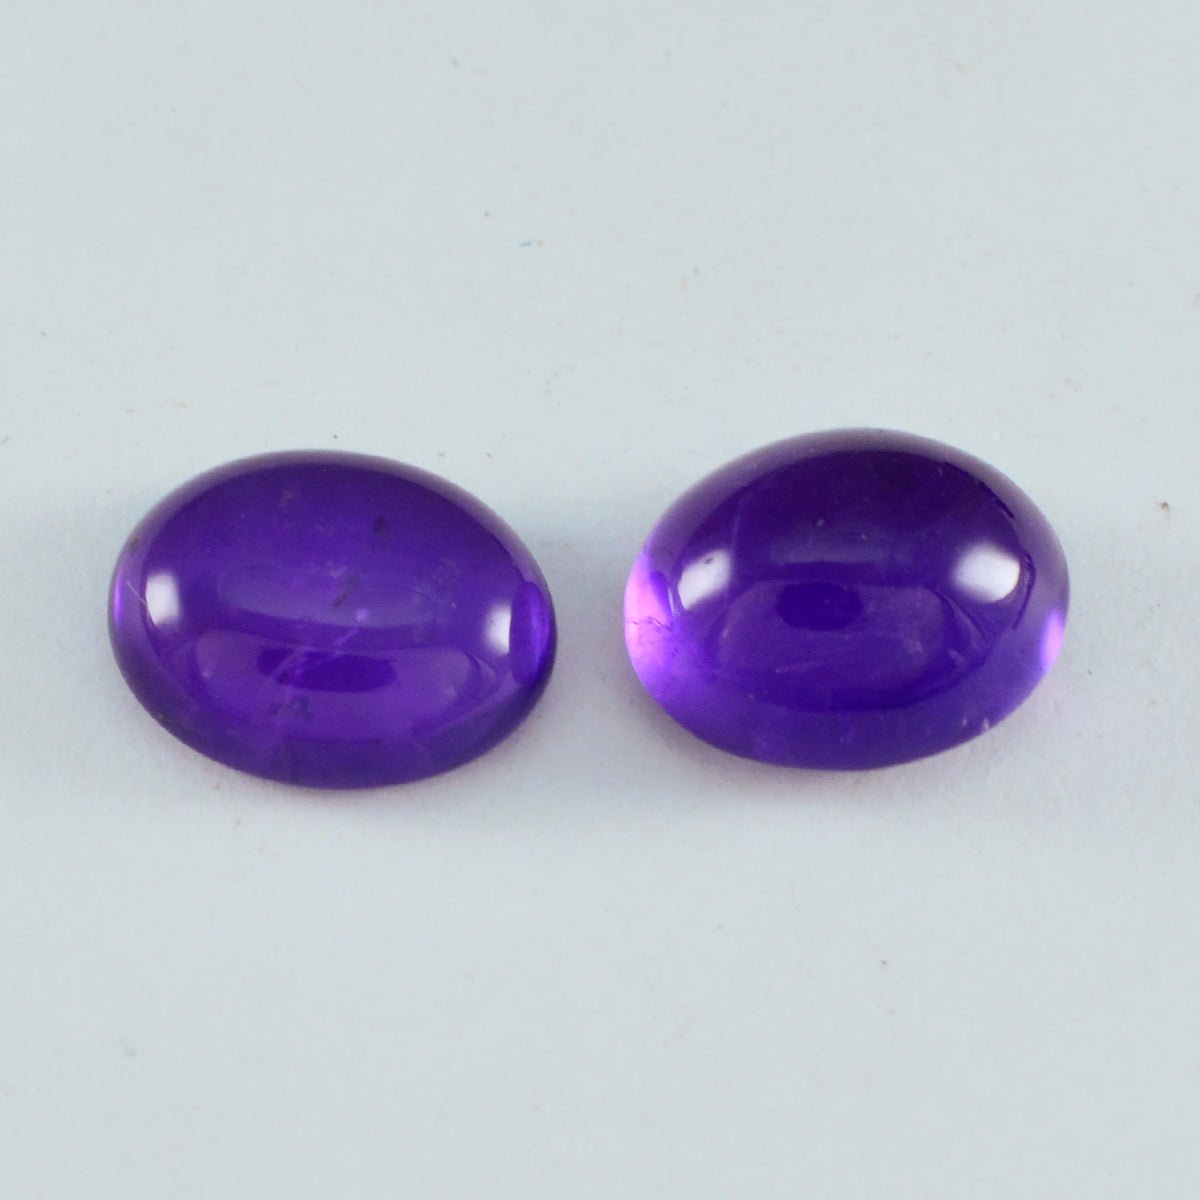 riyogems 1 шт. фиолетовый аметист кабошон 9x11 мм овальной формы красивый качественный свободный драгоценный камень